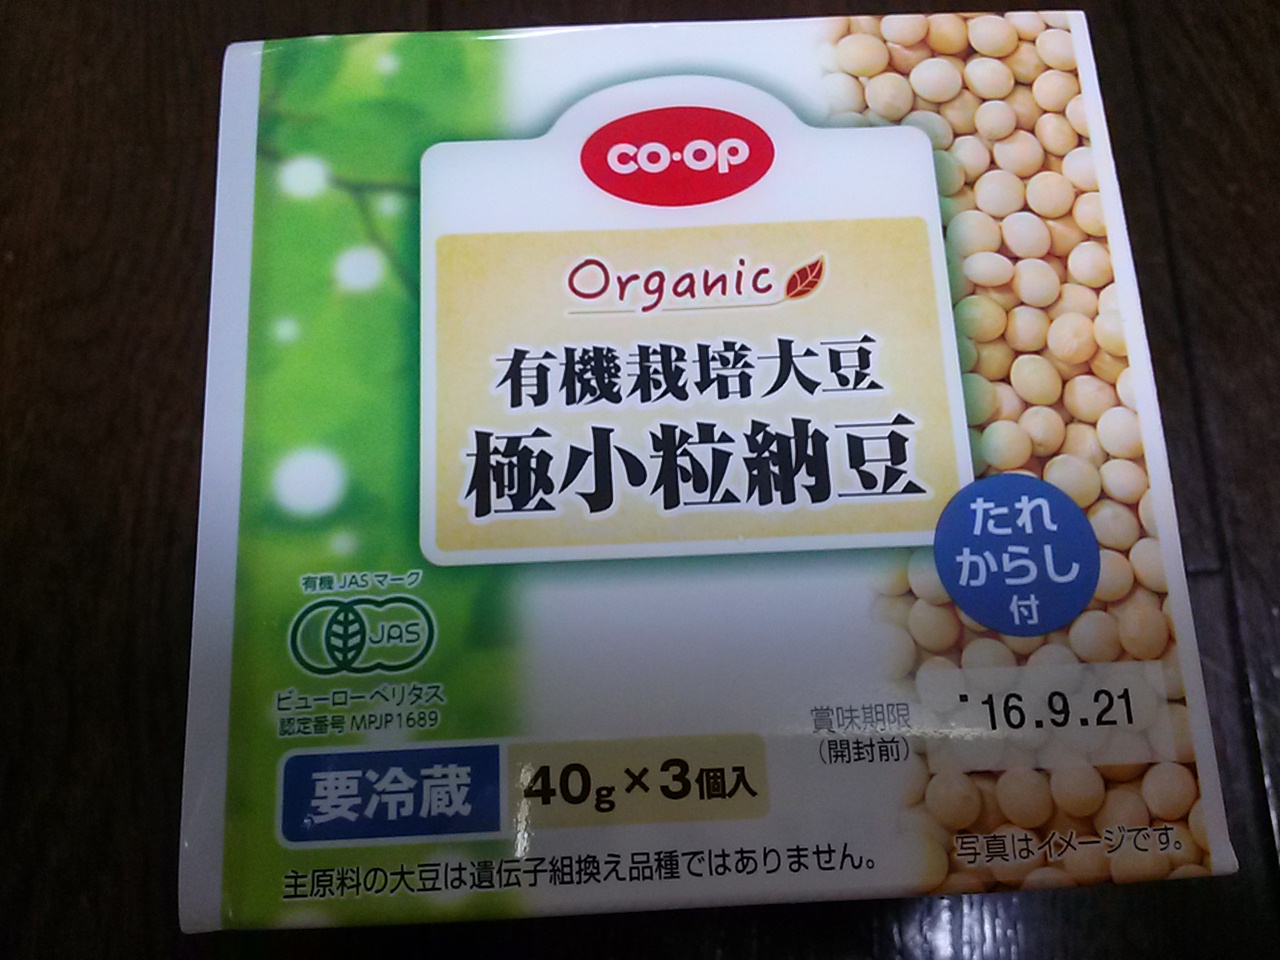 食材宅配コープデリで購入した有機栽培極小粒納豆をお試ししてみたよ